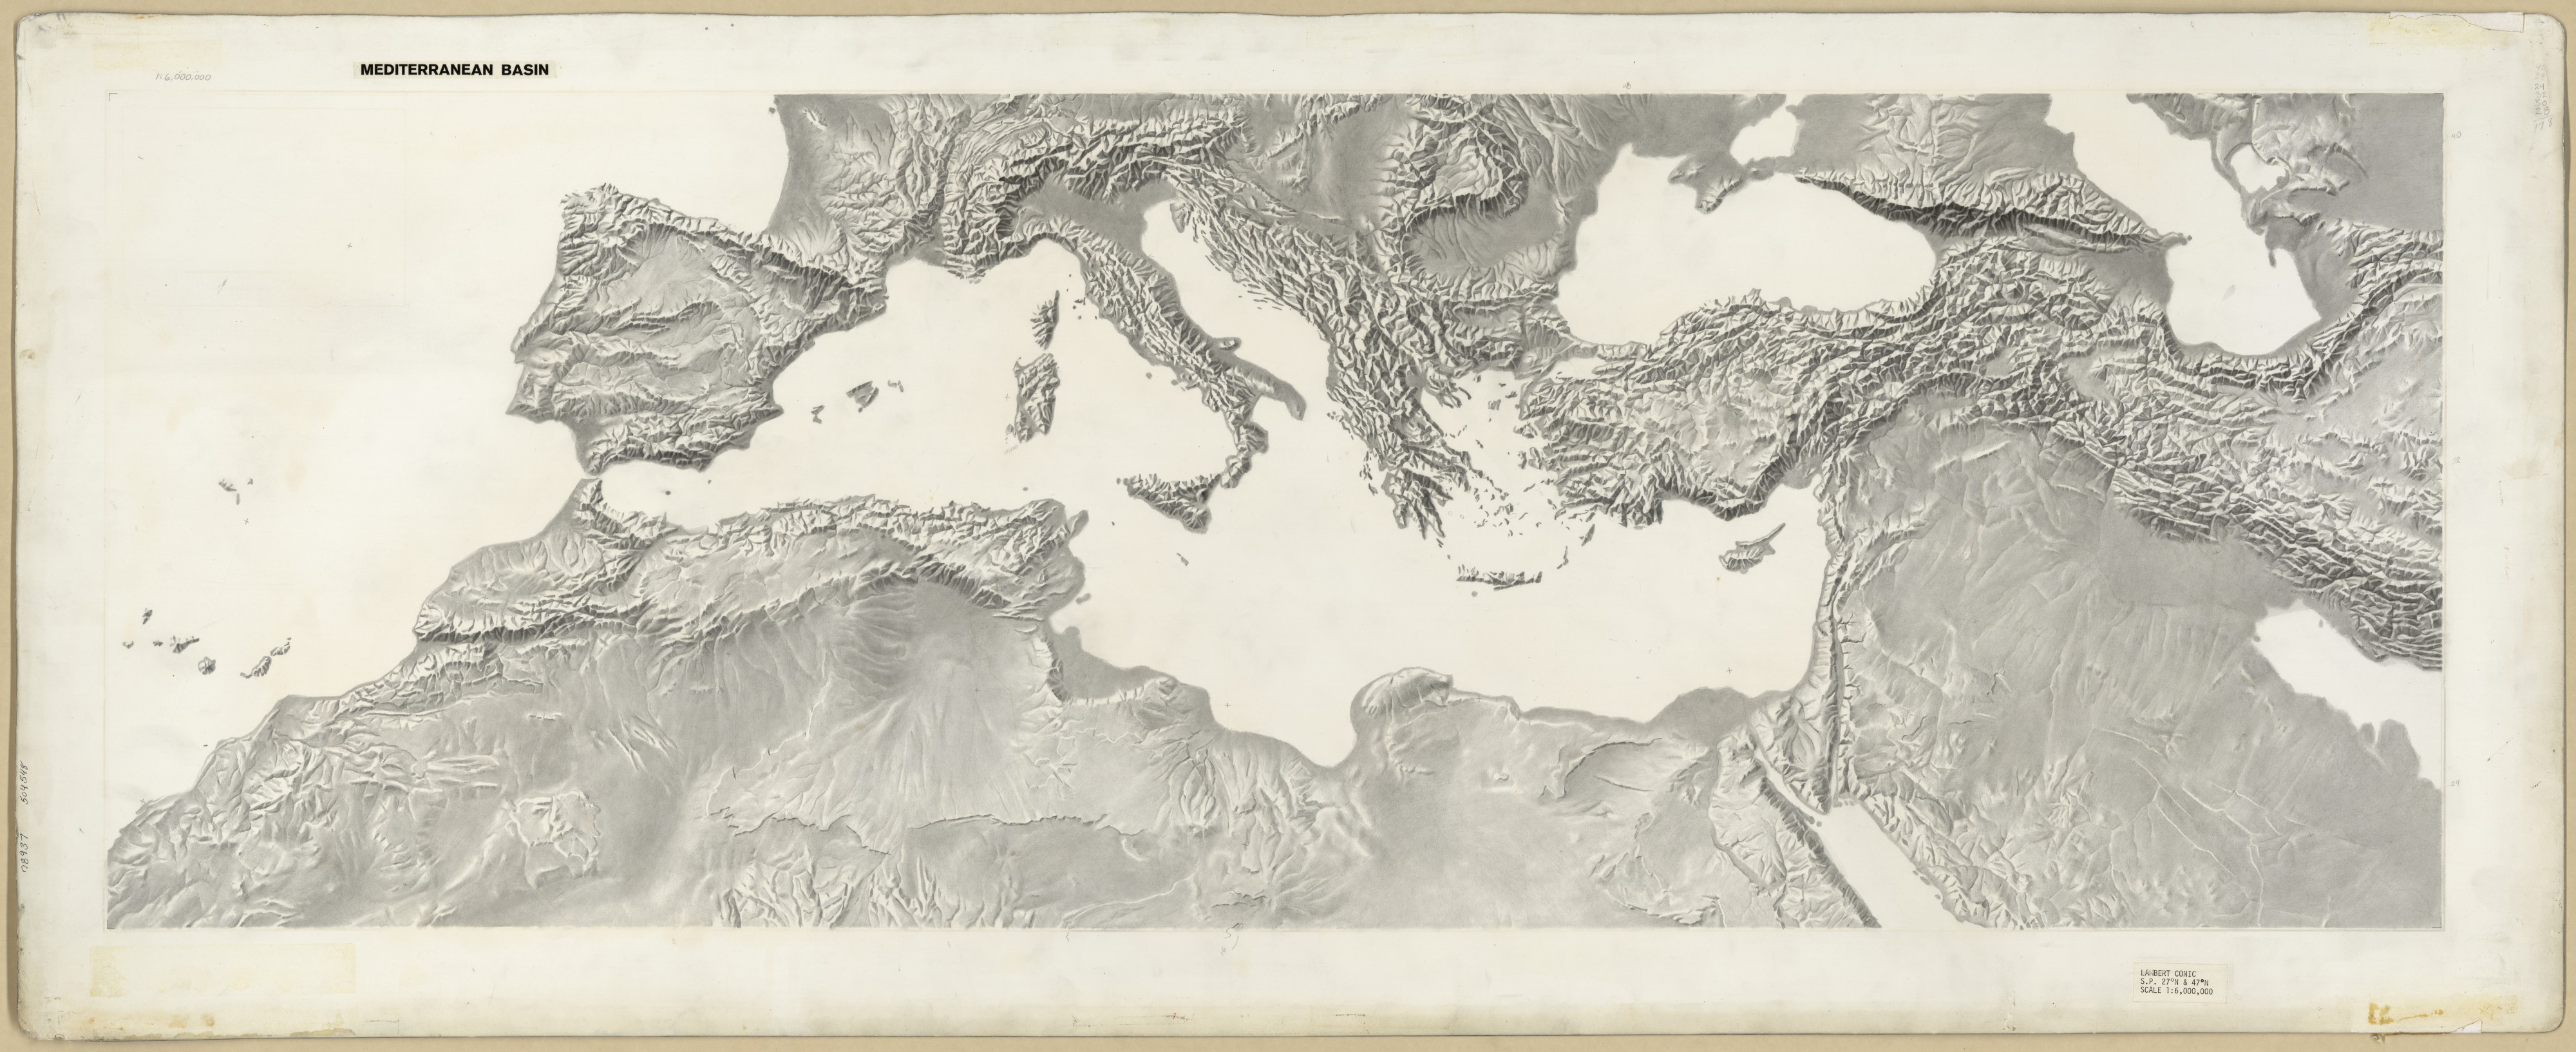 1950s Mediterranean Basin Terrain (30884892905)